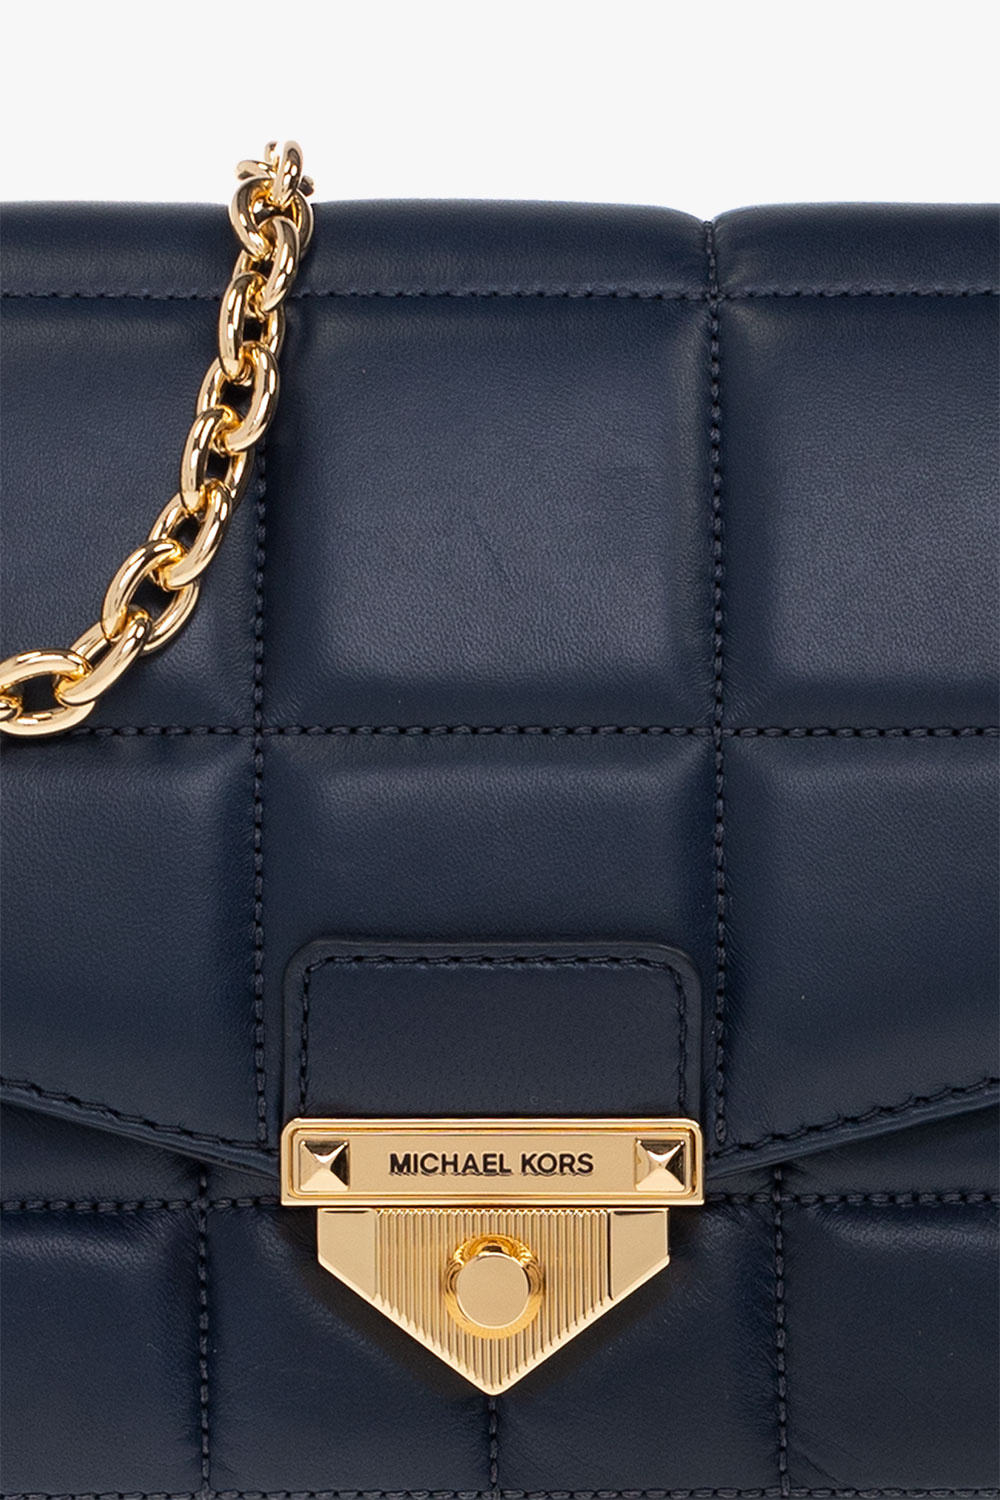 Michael Kors Navy Blue Leather Quilted Large Shoulder Bag